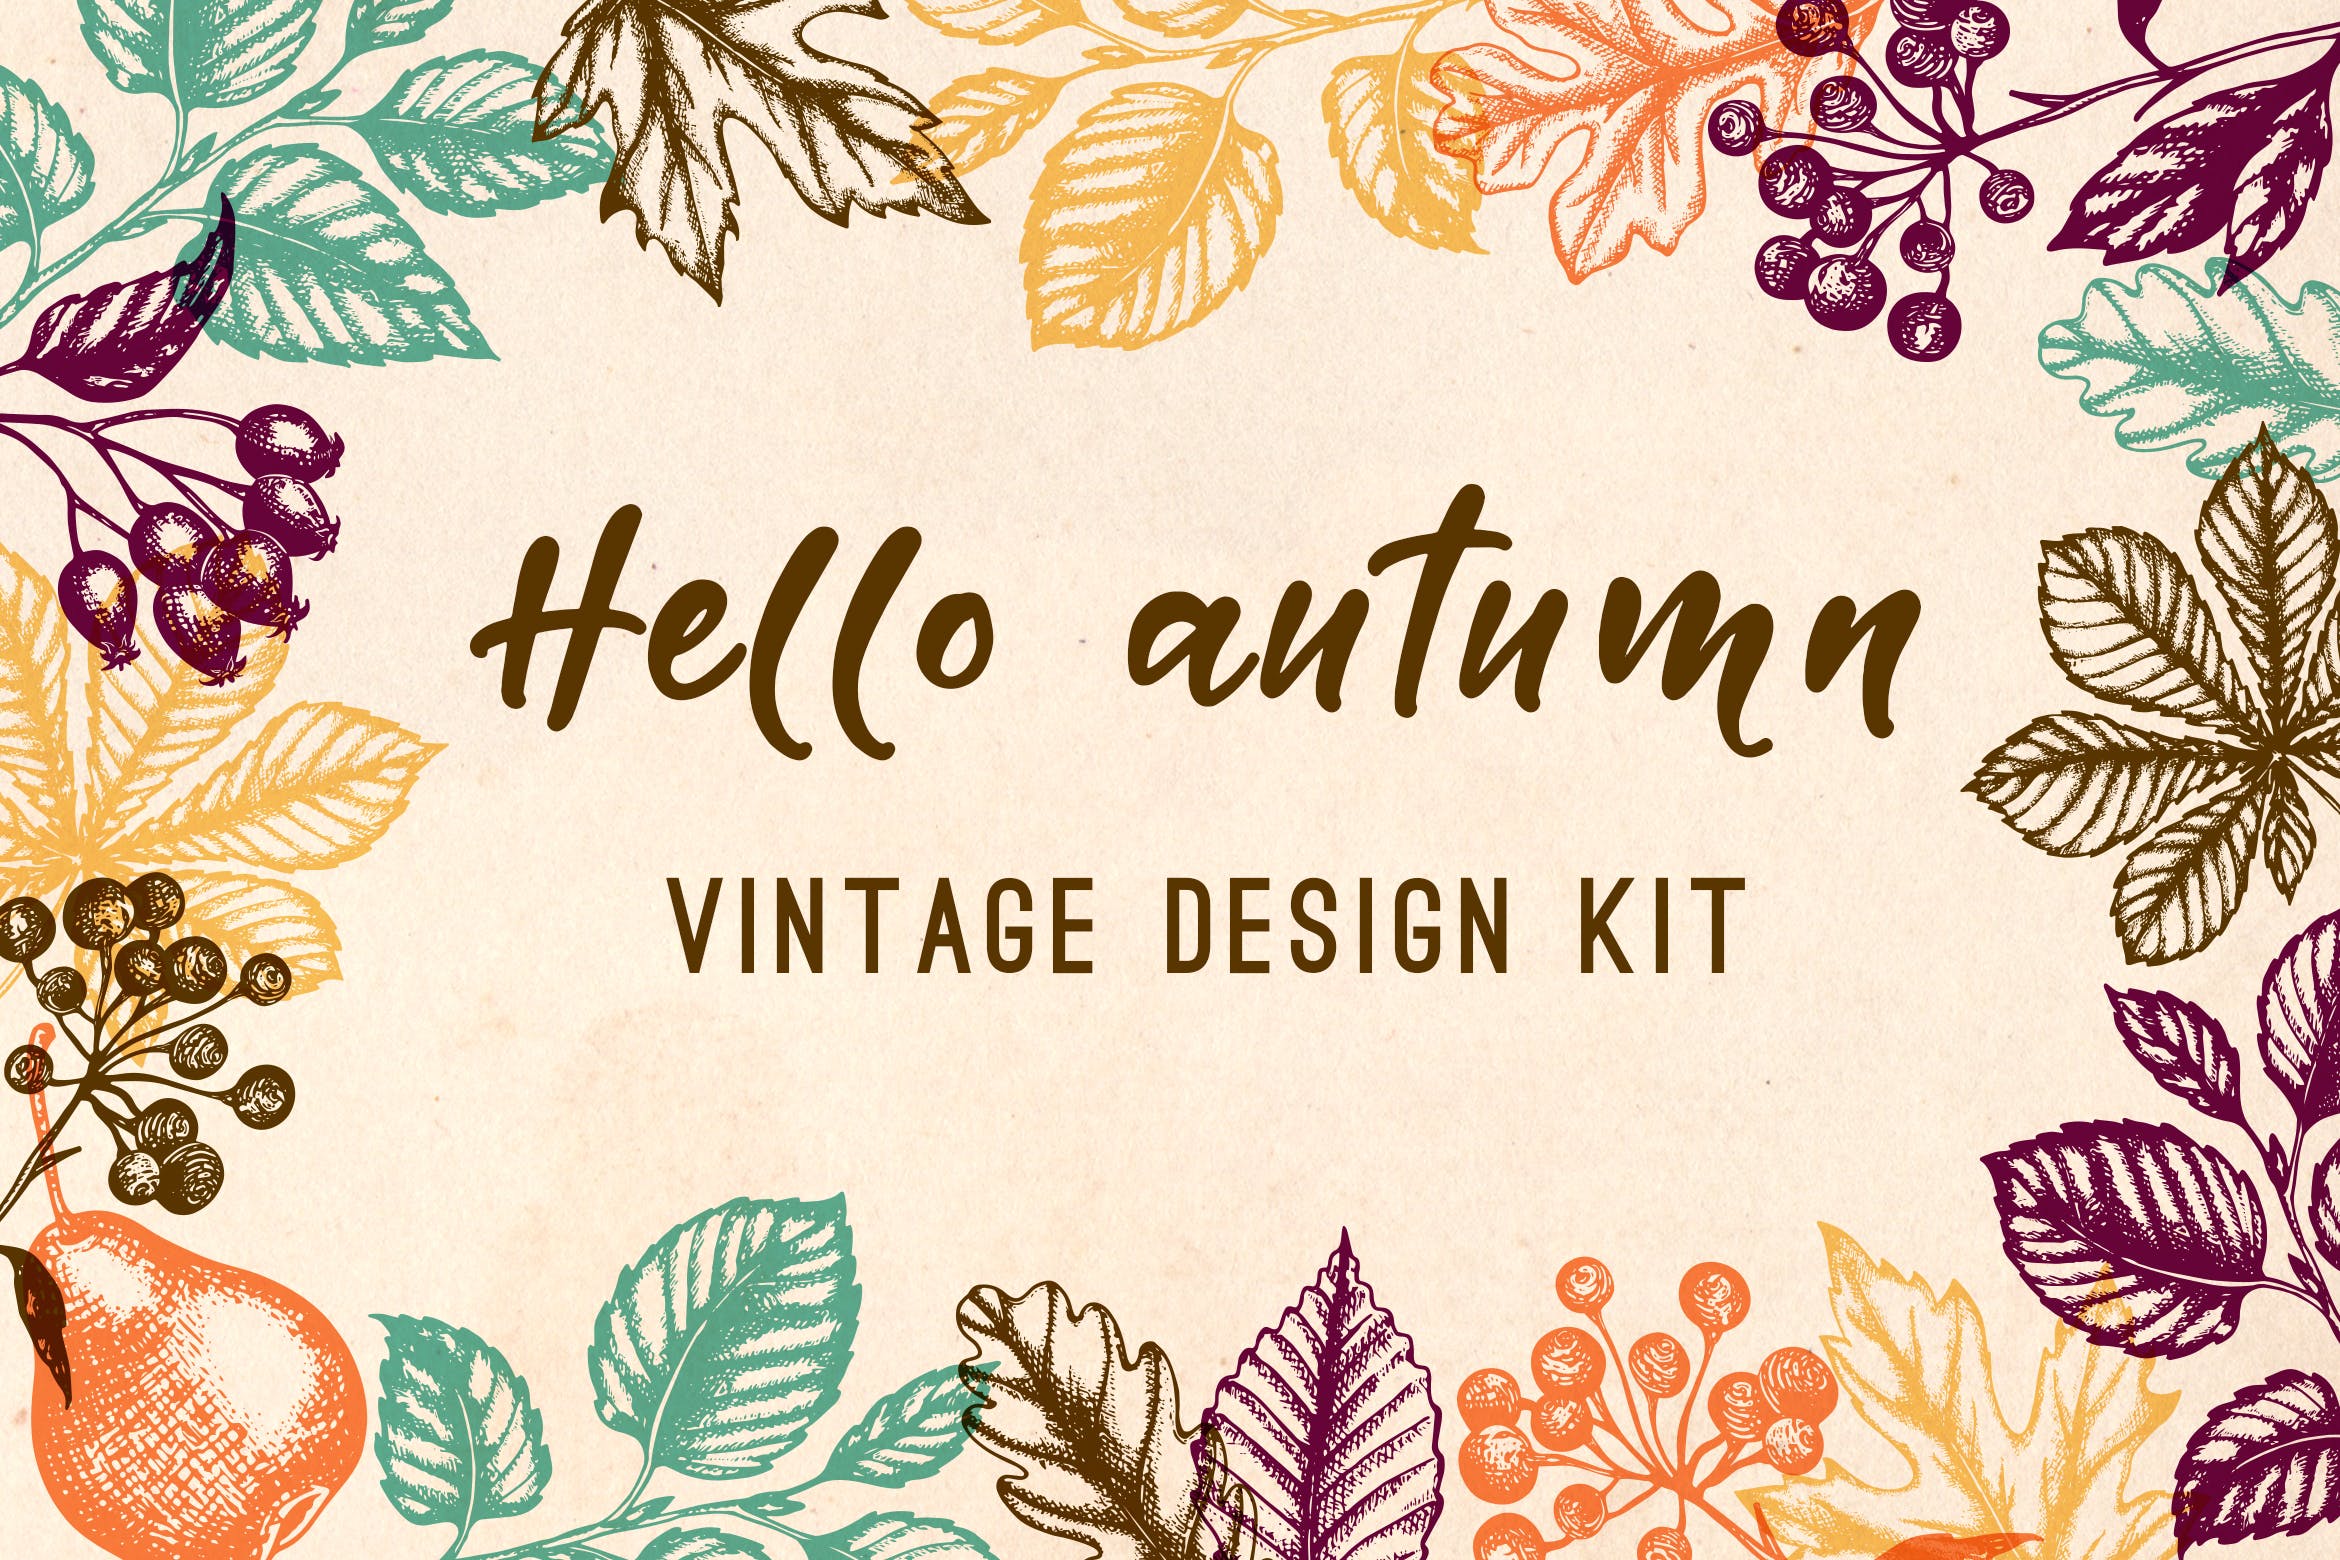 水果手绘杂点风格装饰图案素材下载Vintage Autumn Design Kit插图